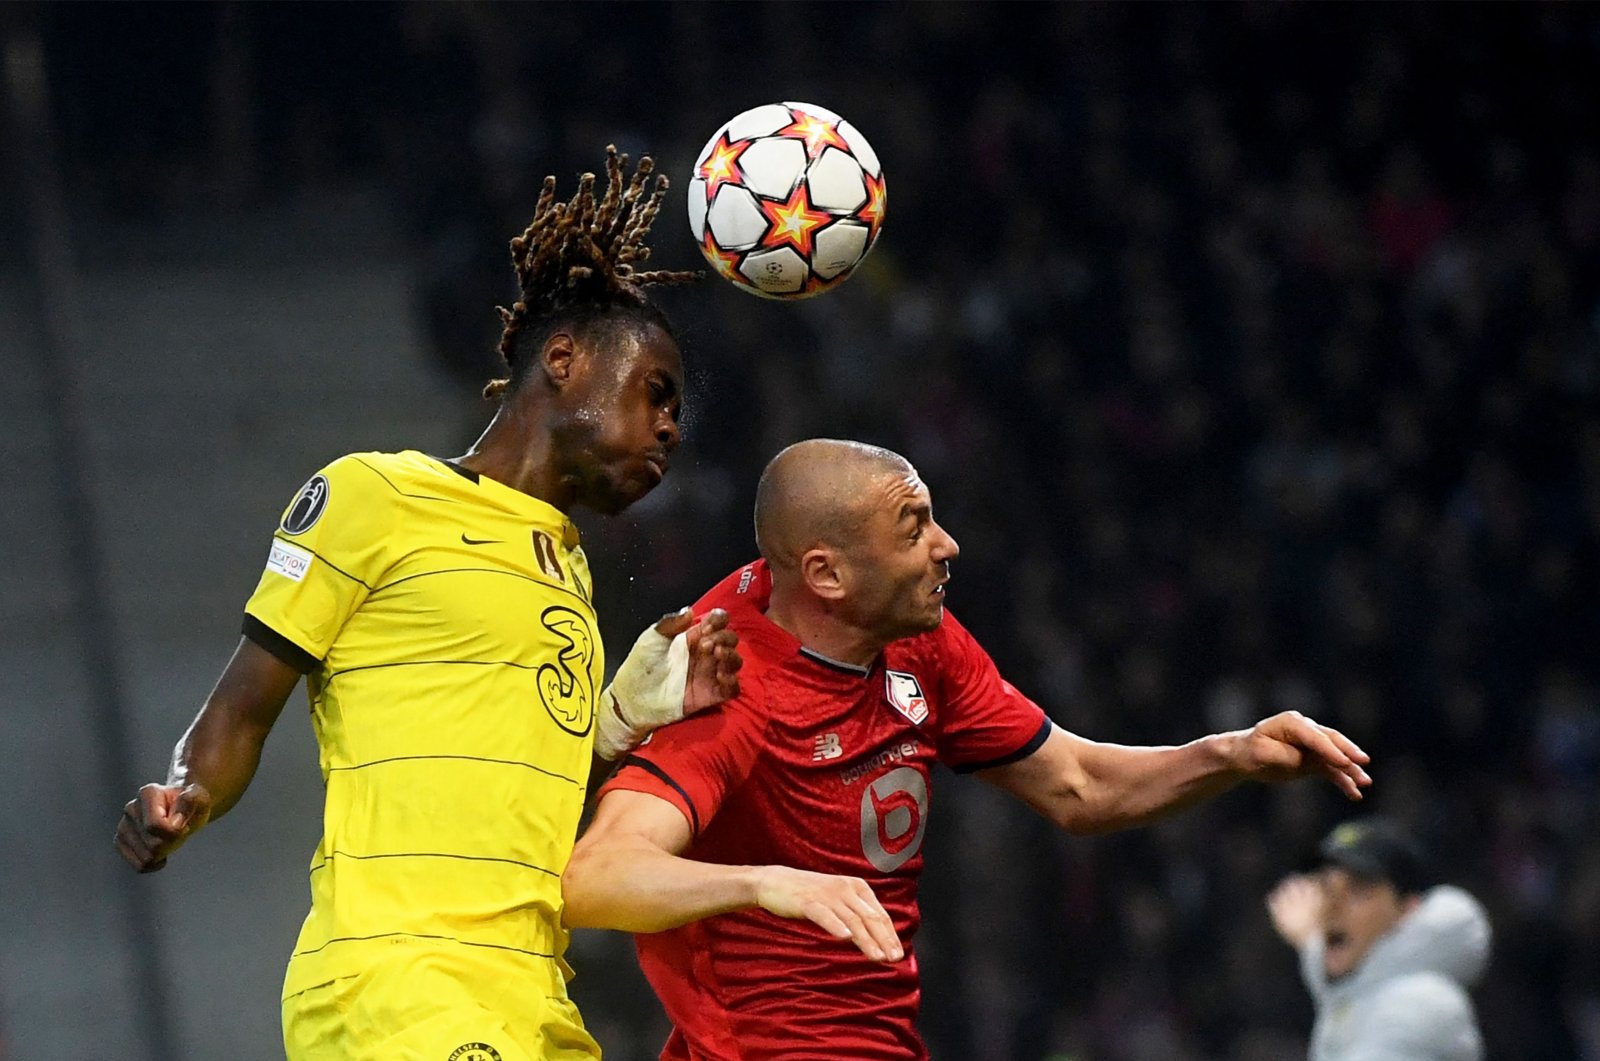 Chelsea di perempat final Liga Champions setelah ketakutan Lille, Juve tersingkir